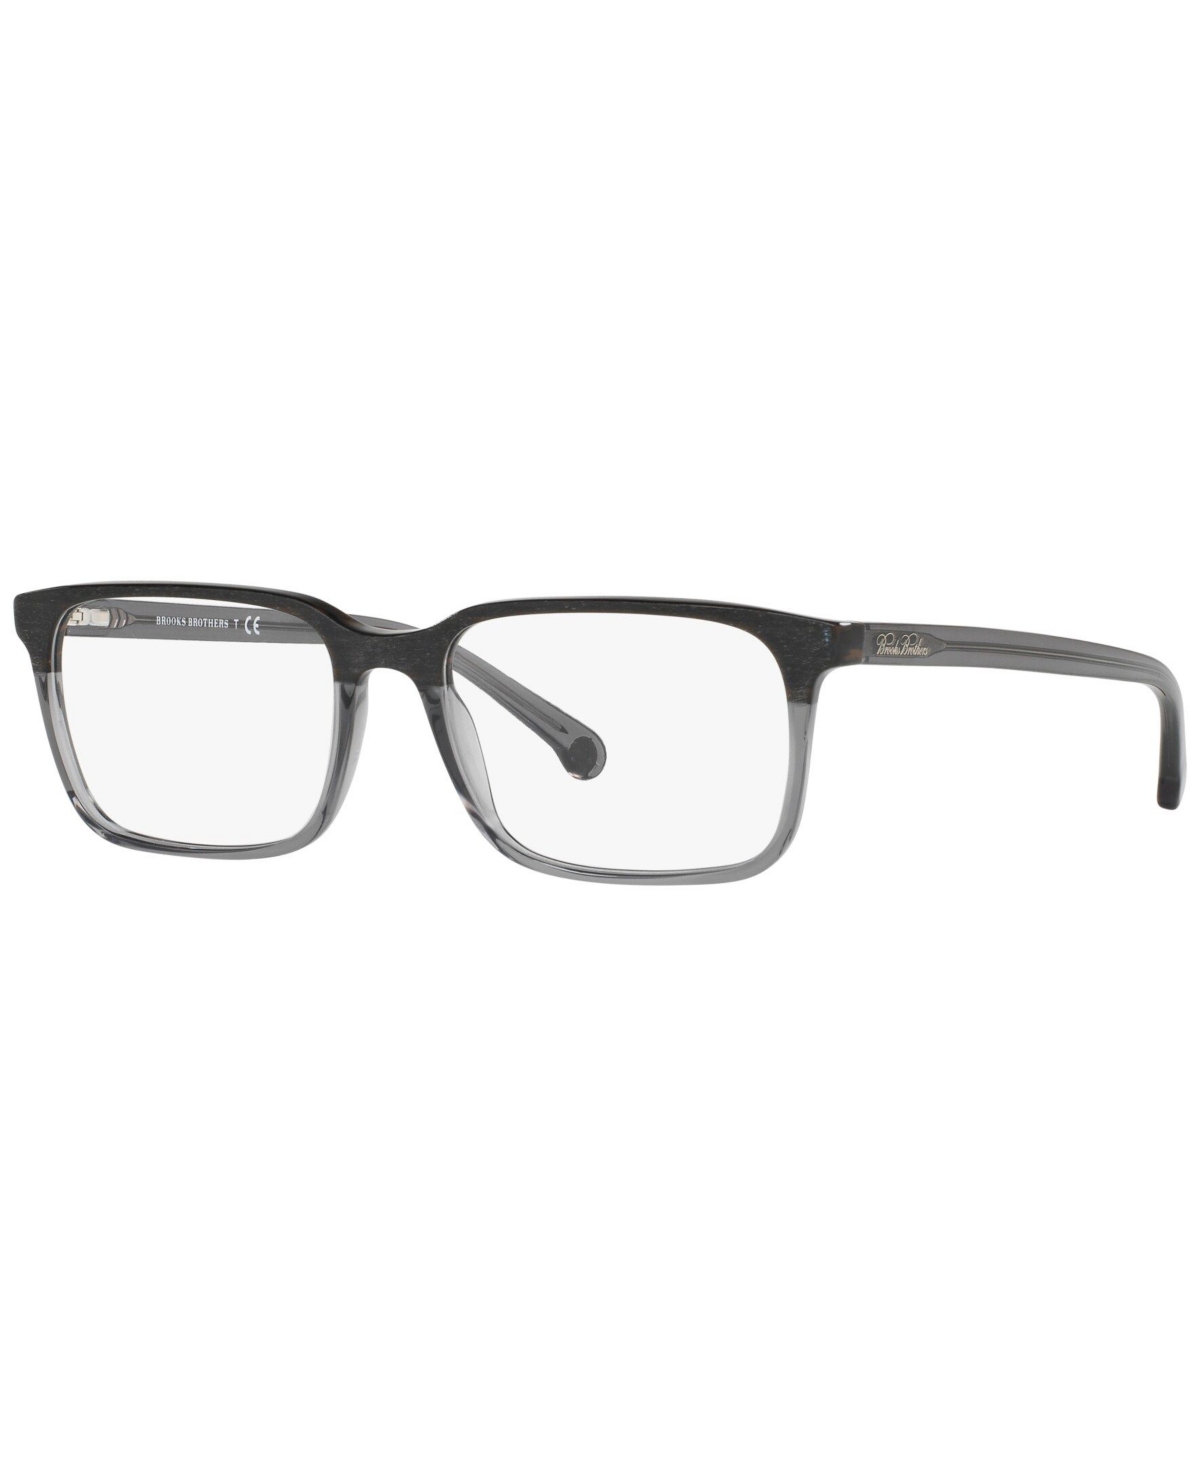 BB2033 Men's Rectangle Eyeglasses - Black